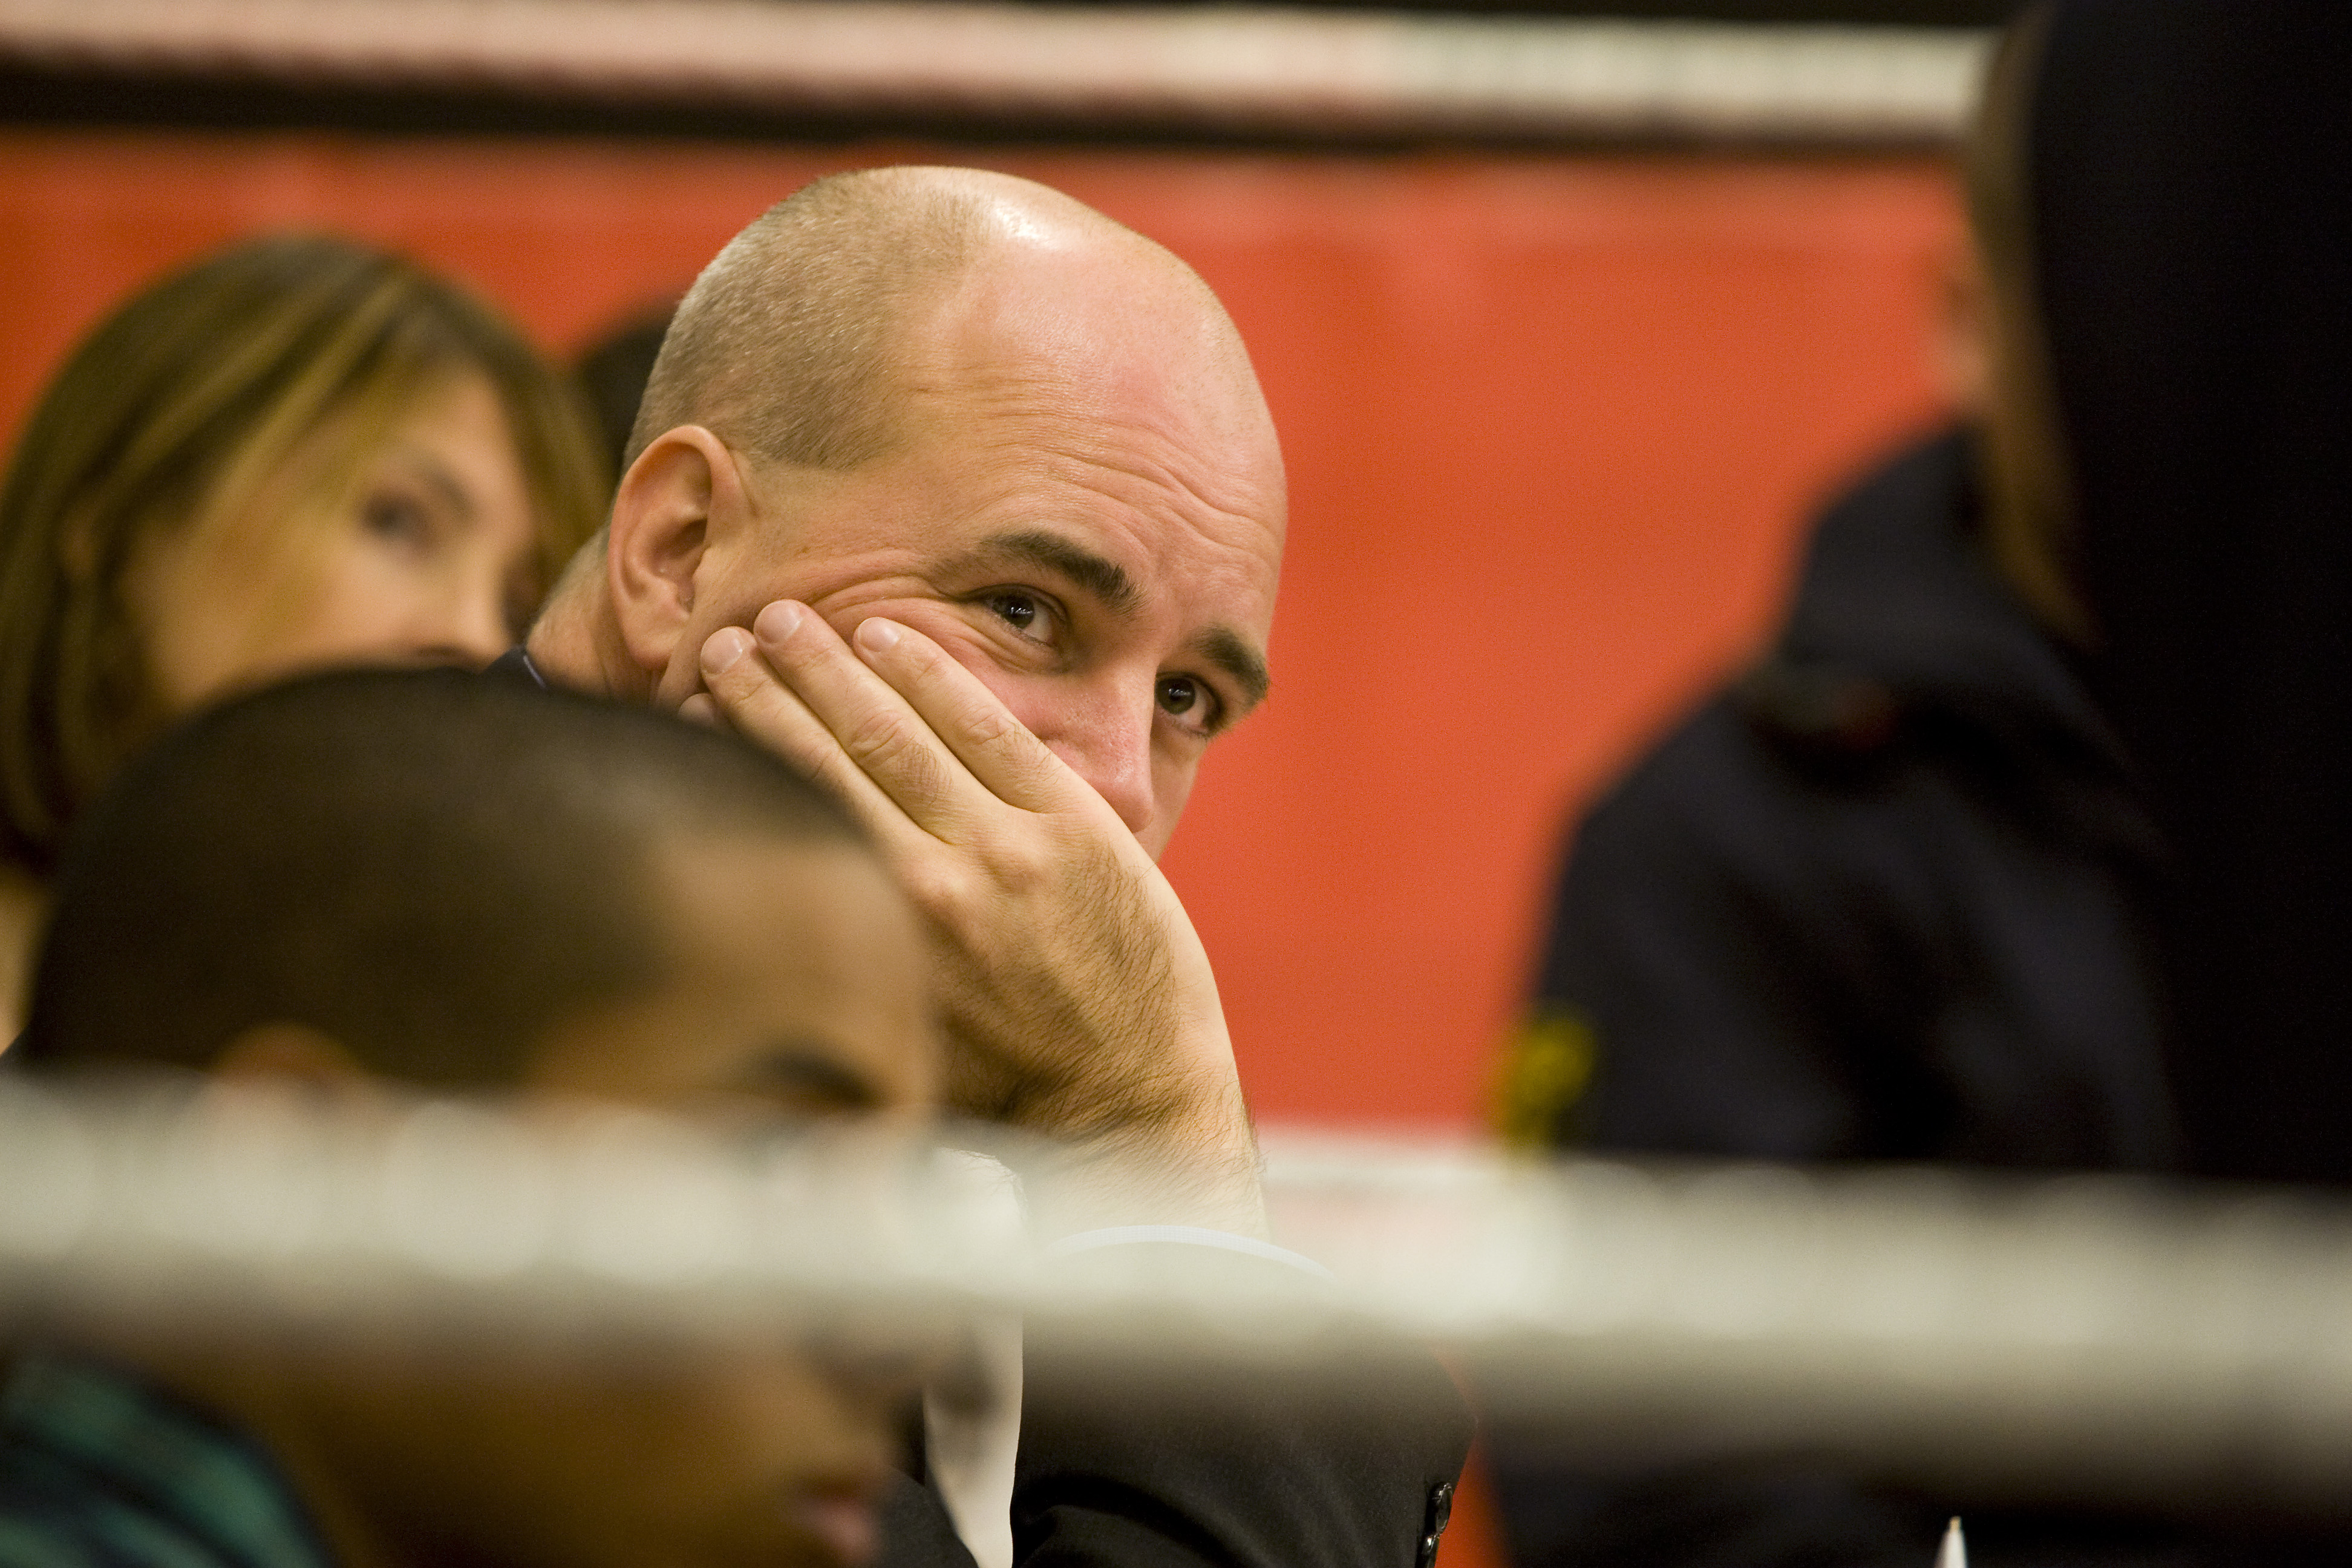 Jobb, Fredrik Reinfeldt, Riksdagsvalet 2010, Ungdomsarbetslöshet, SSU